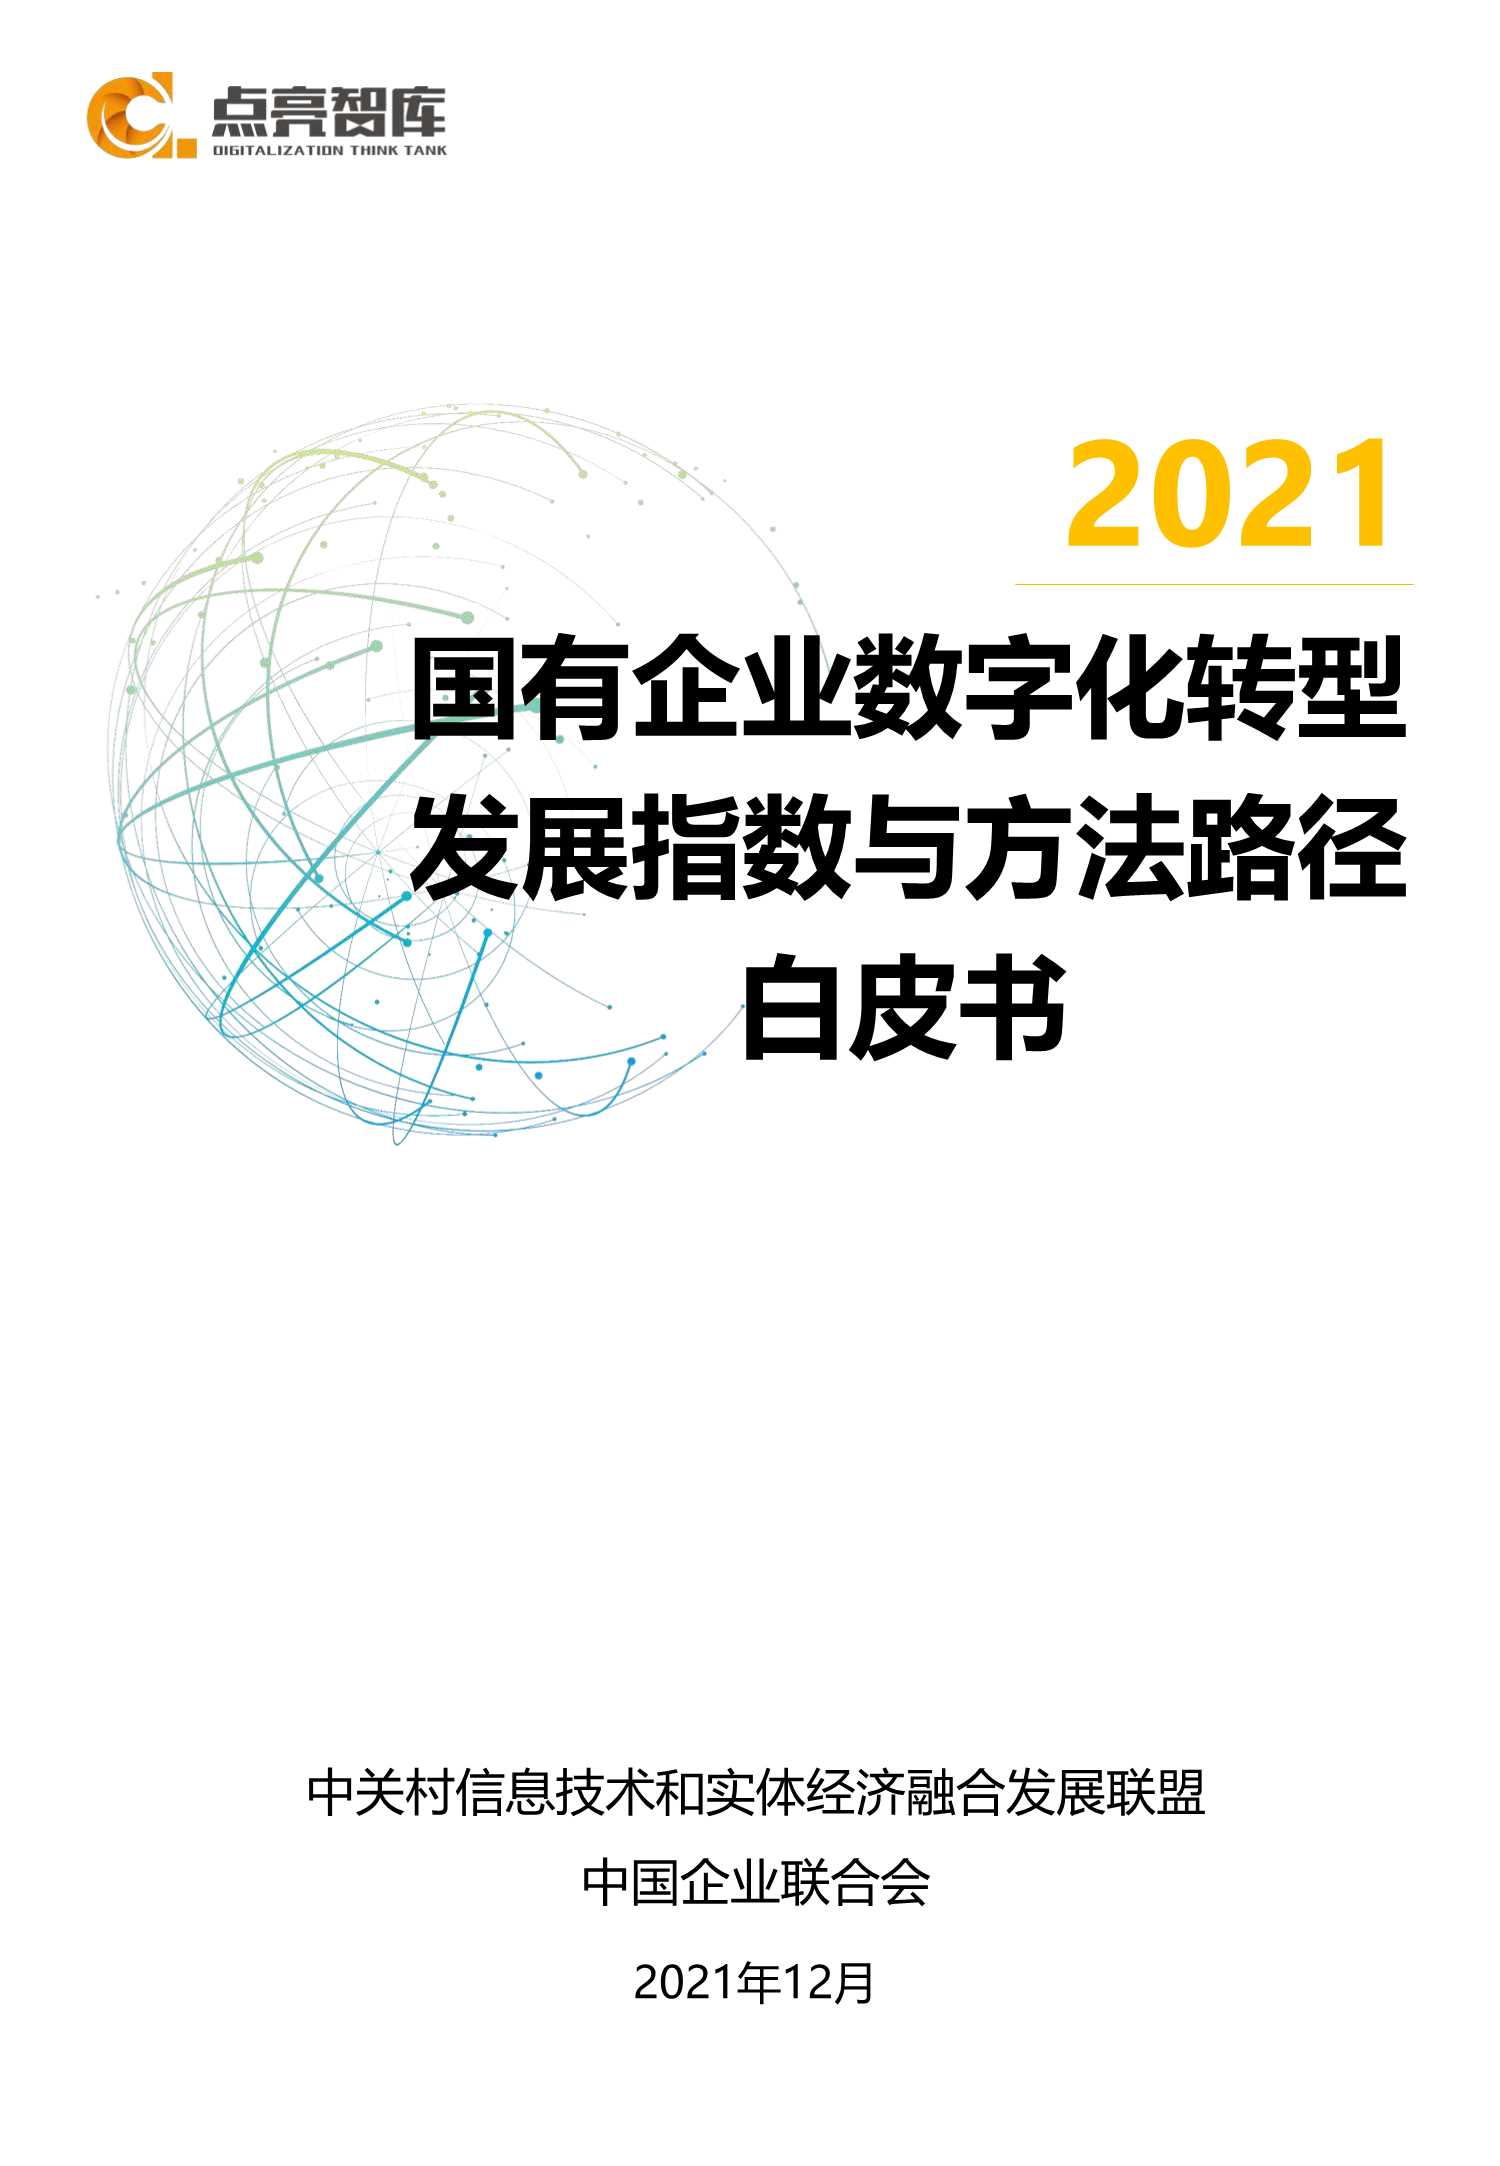 点亮智库-2021年国有企业数字化转型场景示范和线路图研究白皮书-2021.12-105页